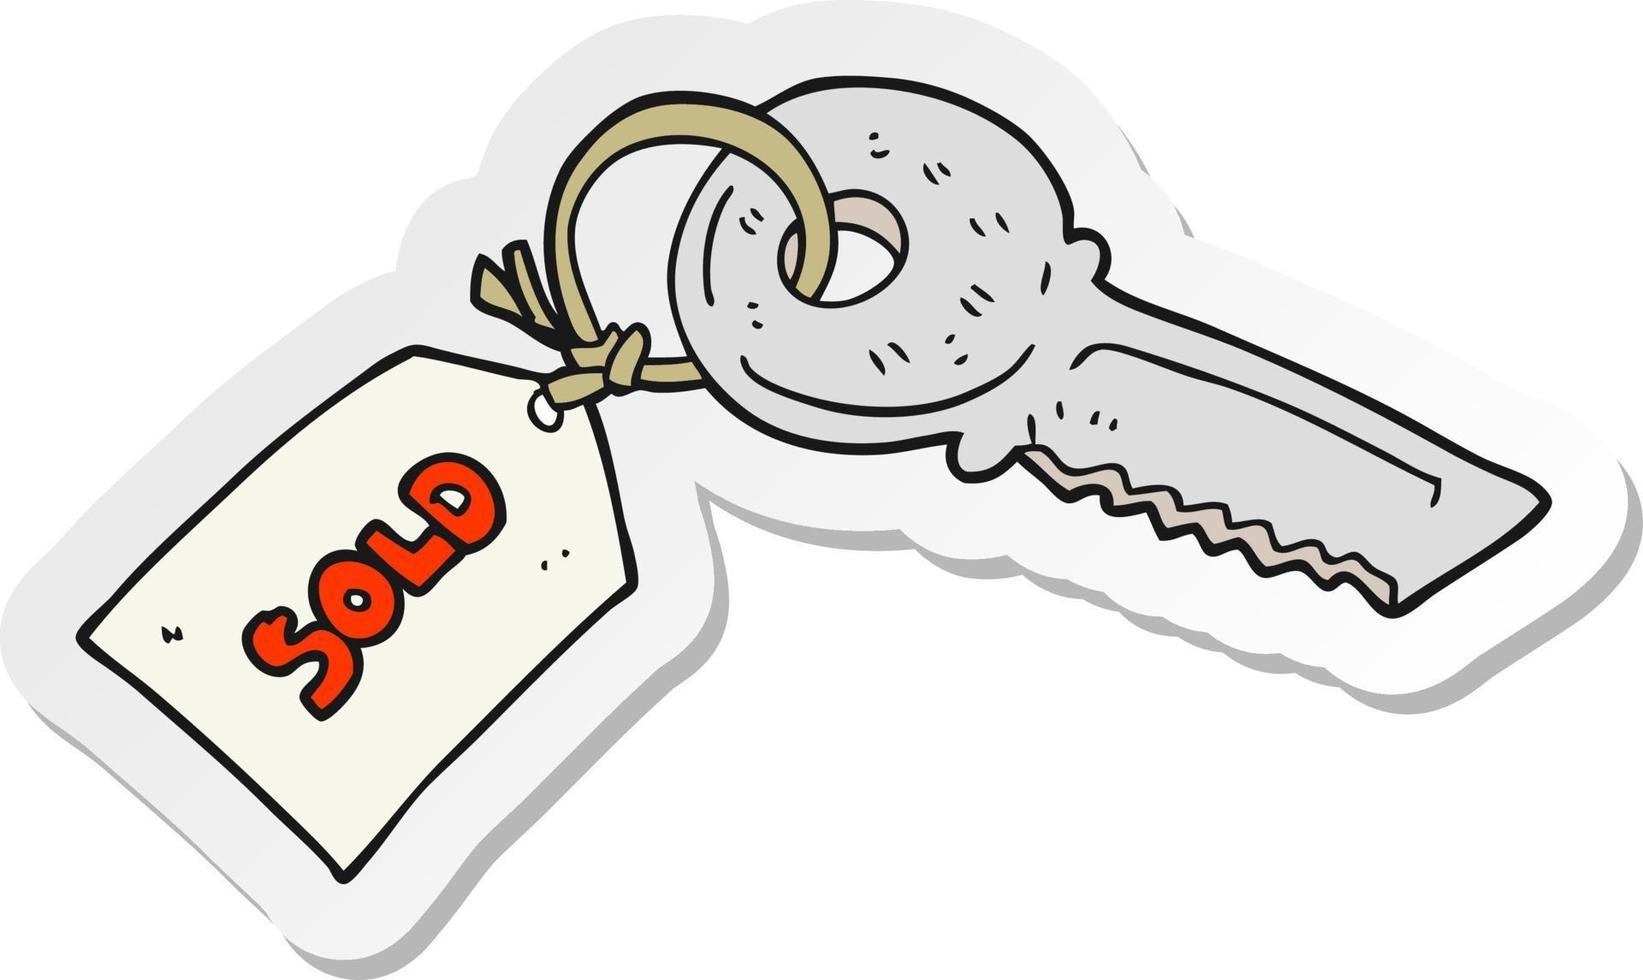 adesivo de uma chave de desenho animado com etiqueta vendida vetor